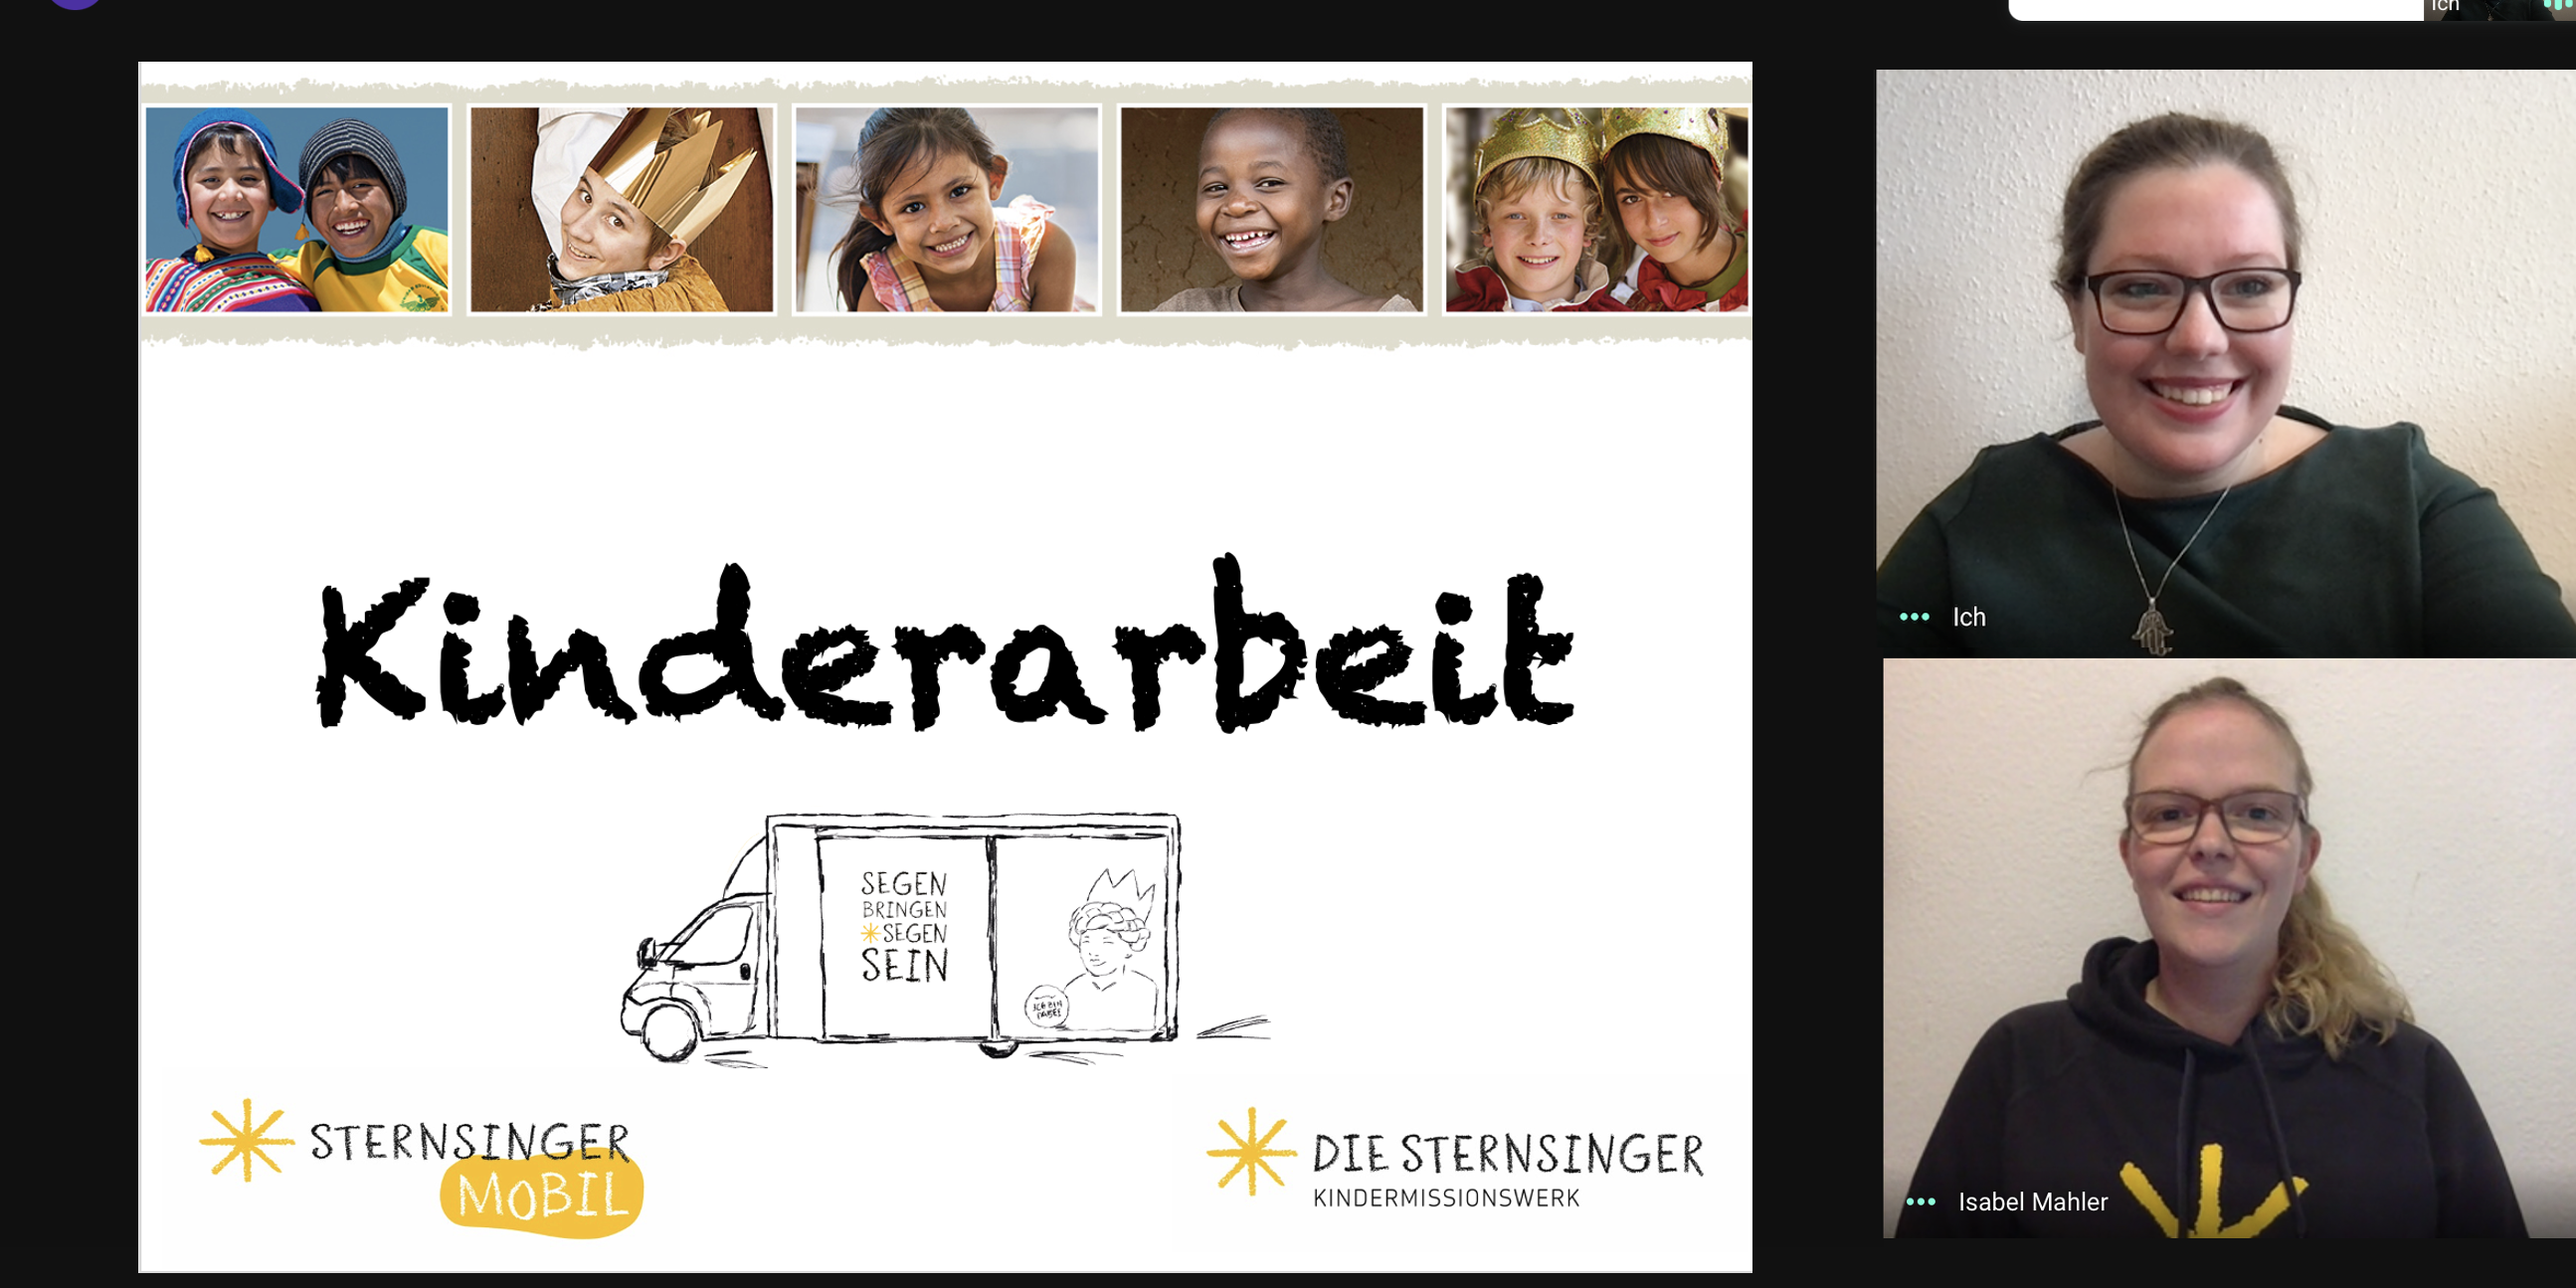 Die Referentinnen Alena Schmitz (oben) und Isabel Mahler vermitteln Kindern auf spielerische Art und Weise Wissen über die Sternsingeraktion. Screenshot: Kindermissionswerk 'Die Sternsinger'.